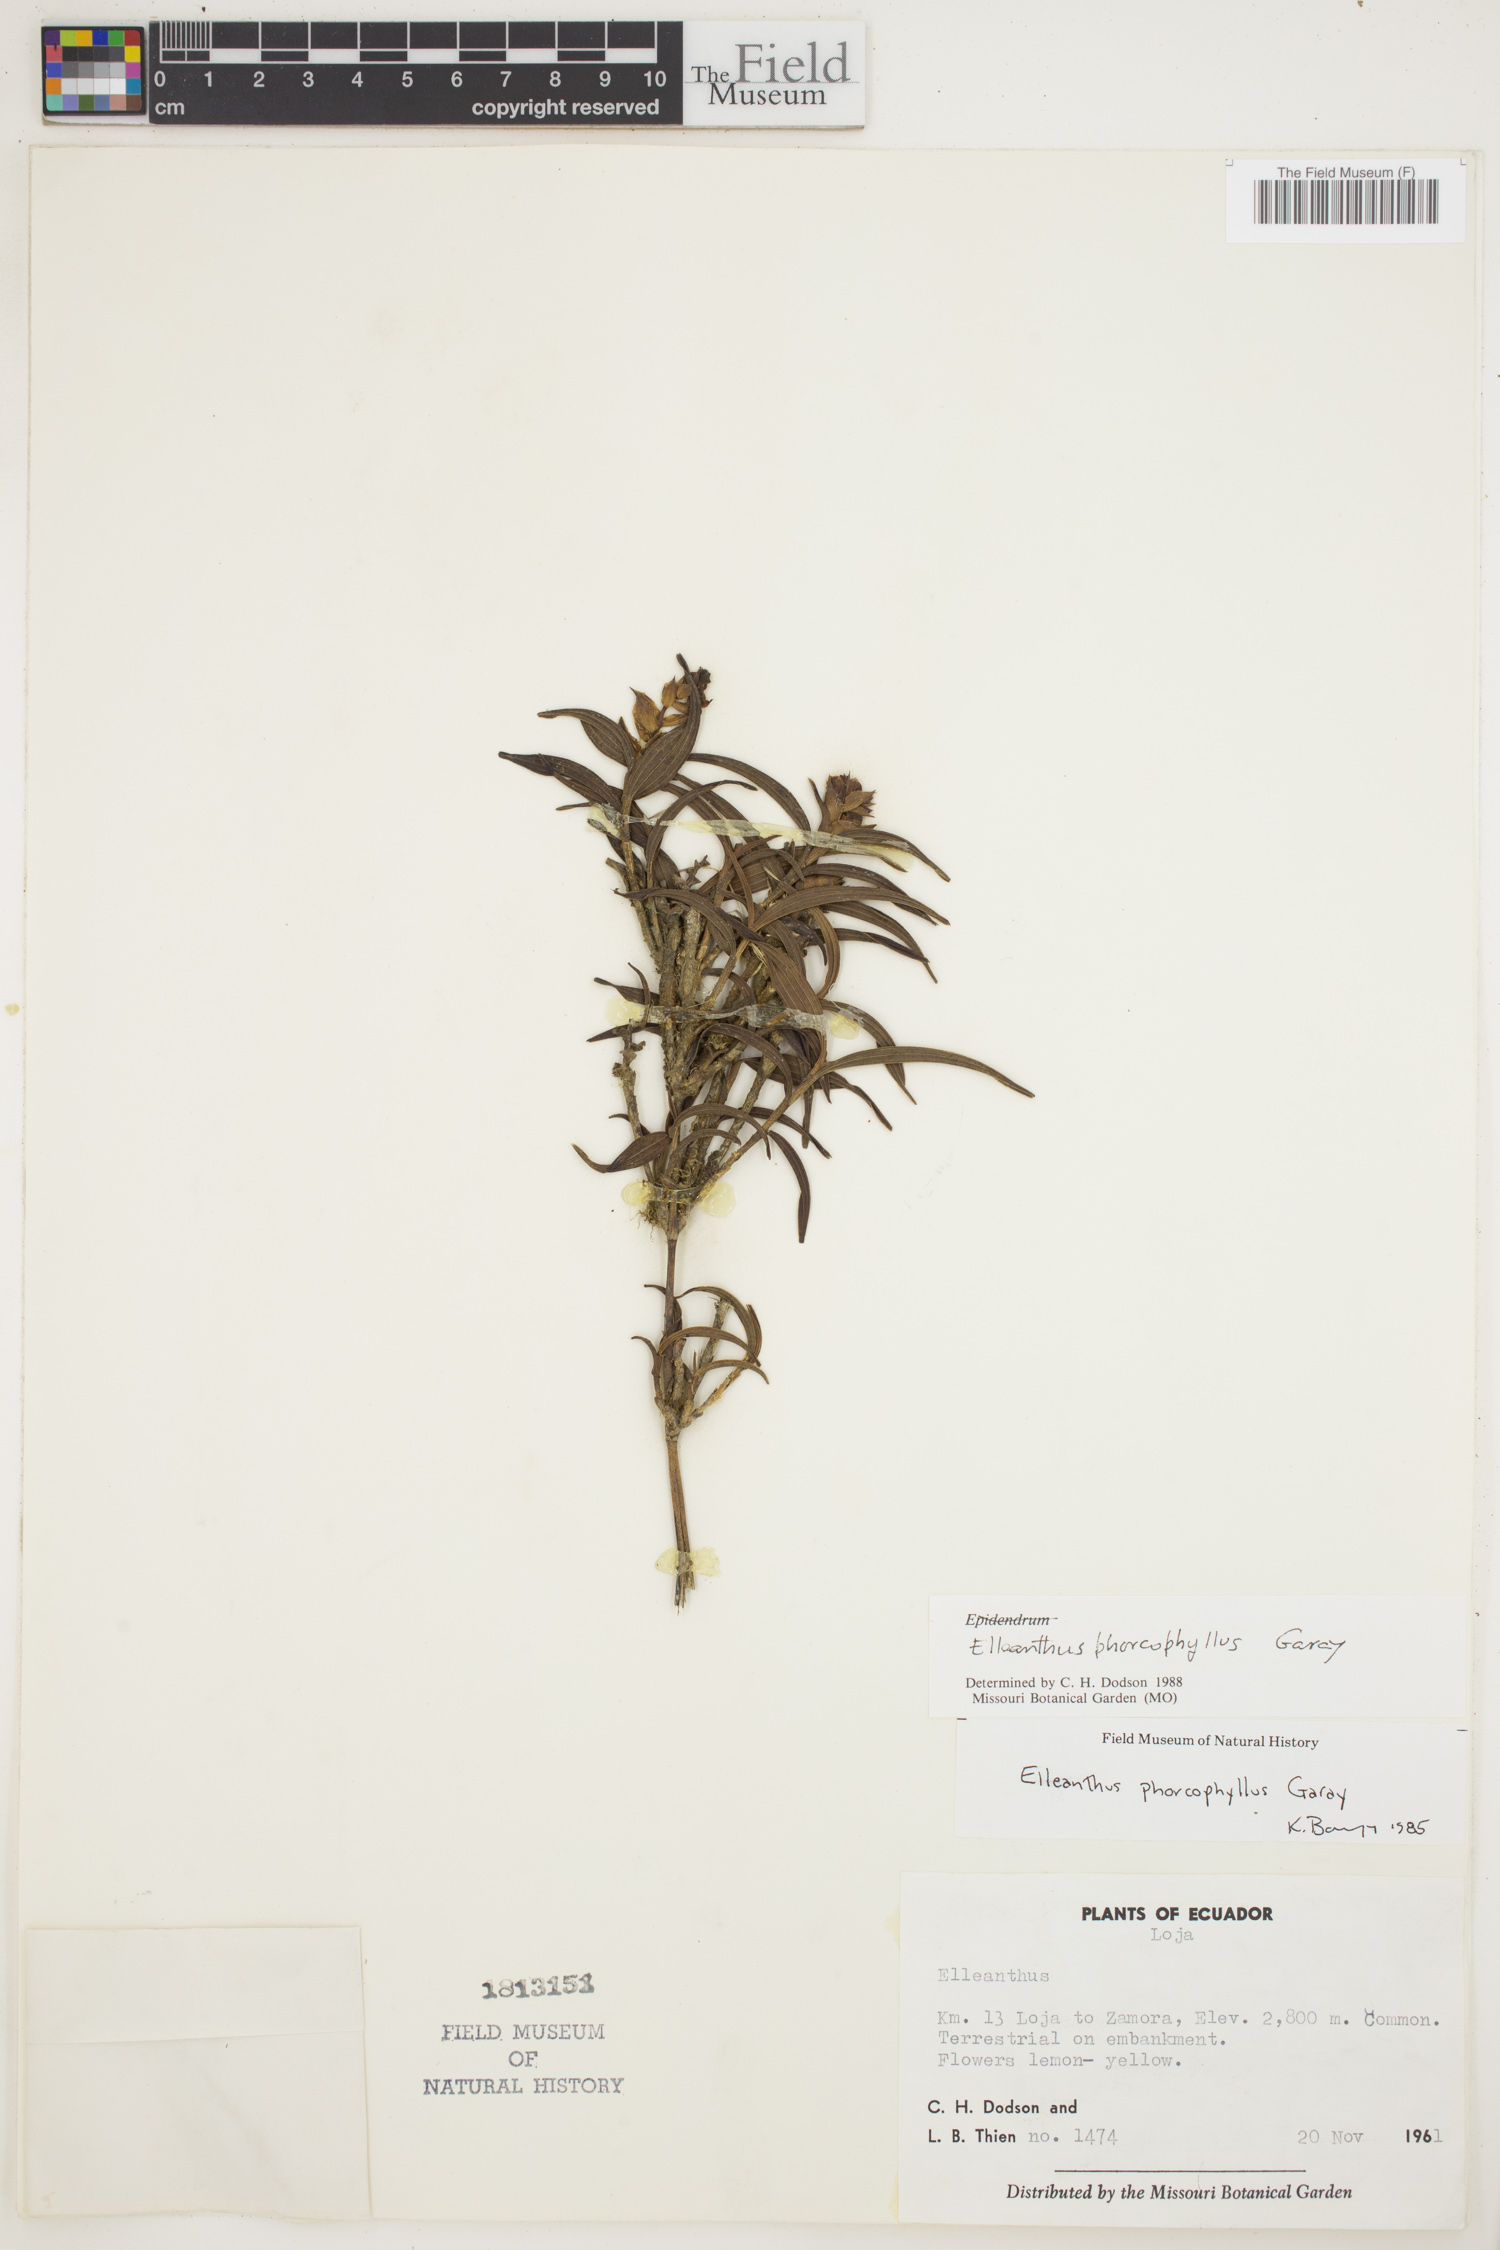 Elleanthus phorcophyllus image